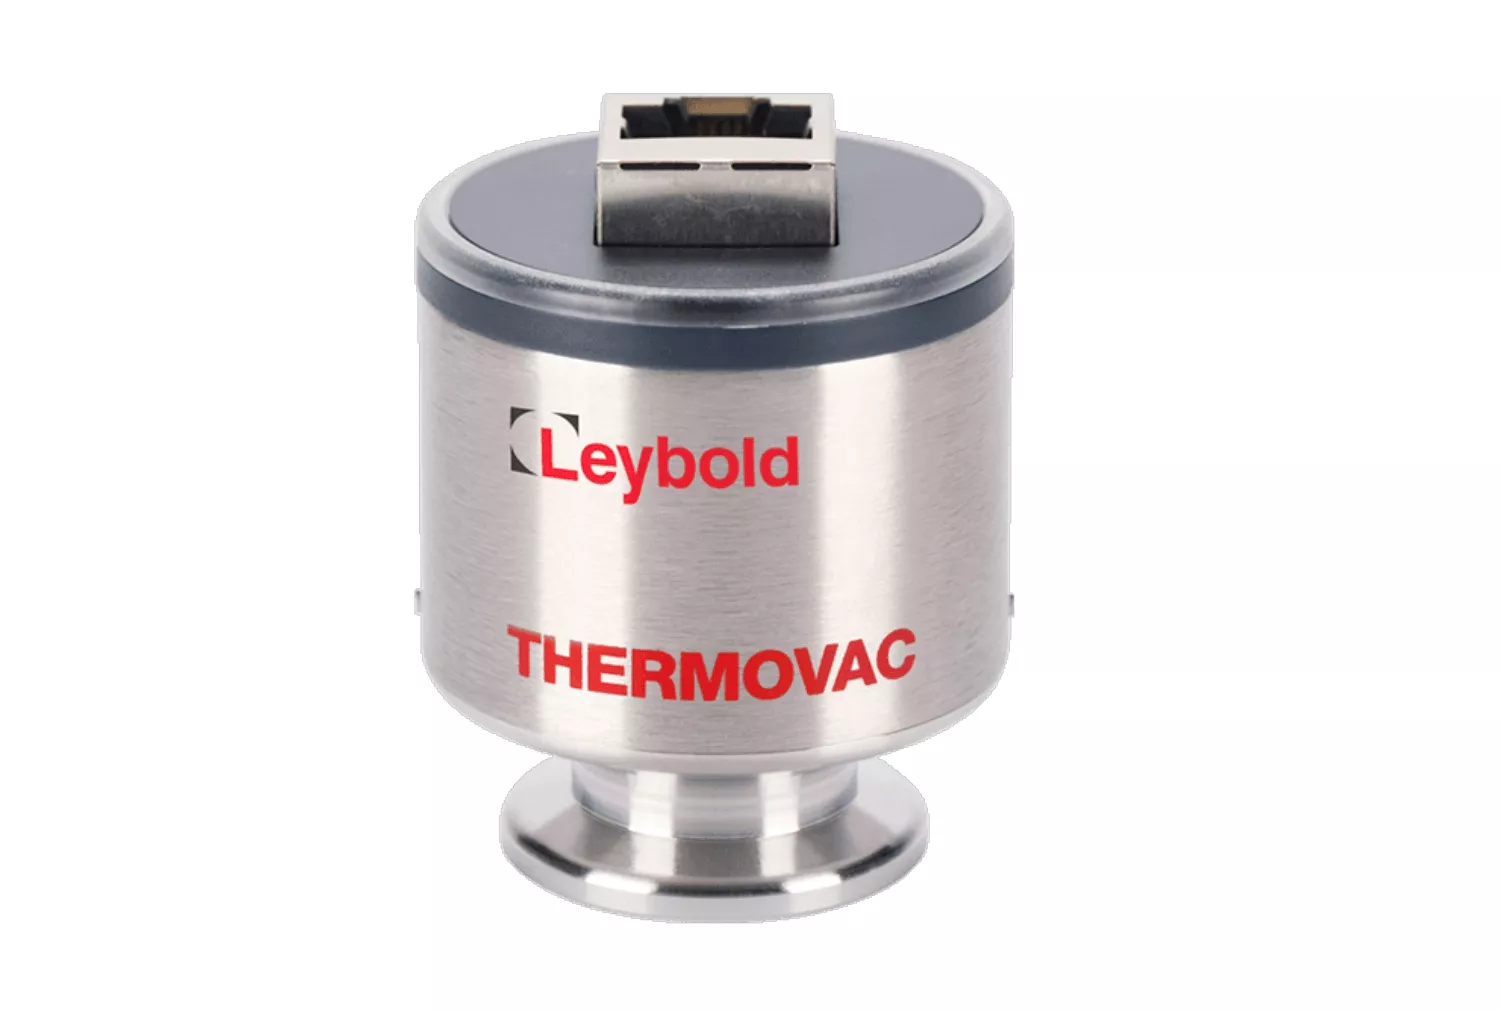 Купить в АО Вакууммаш ✓ Активный датчик THERMOVAC TTR 91 N (S) Leybold по цене производителя